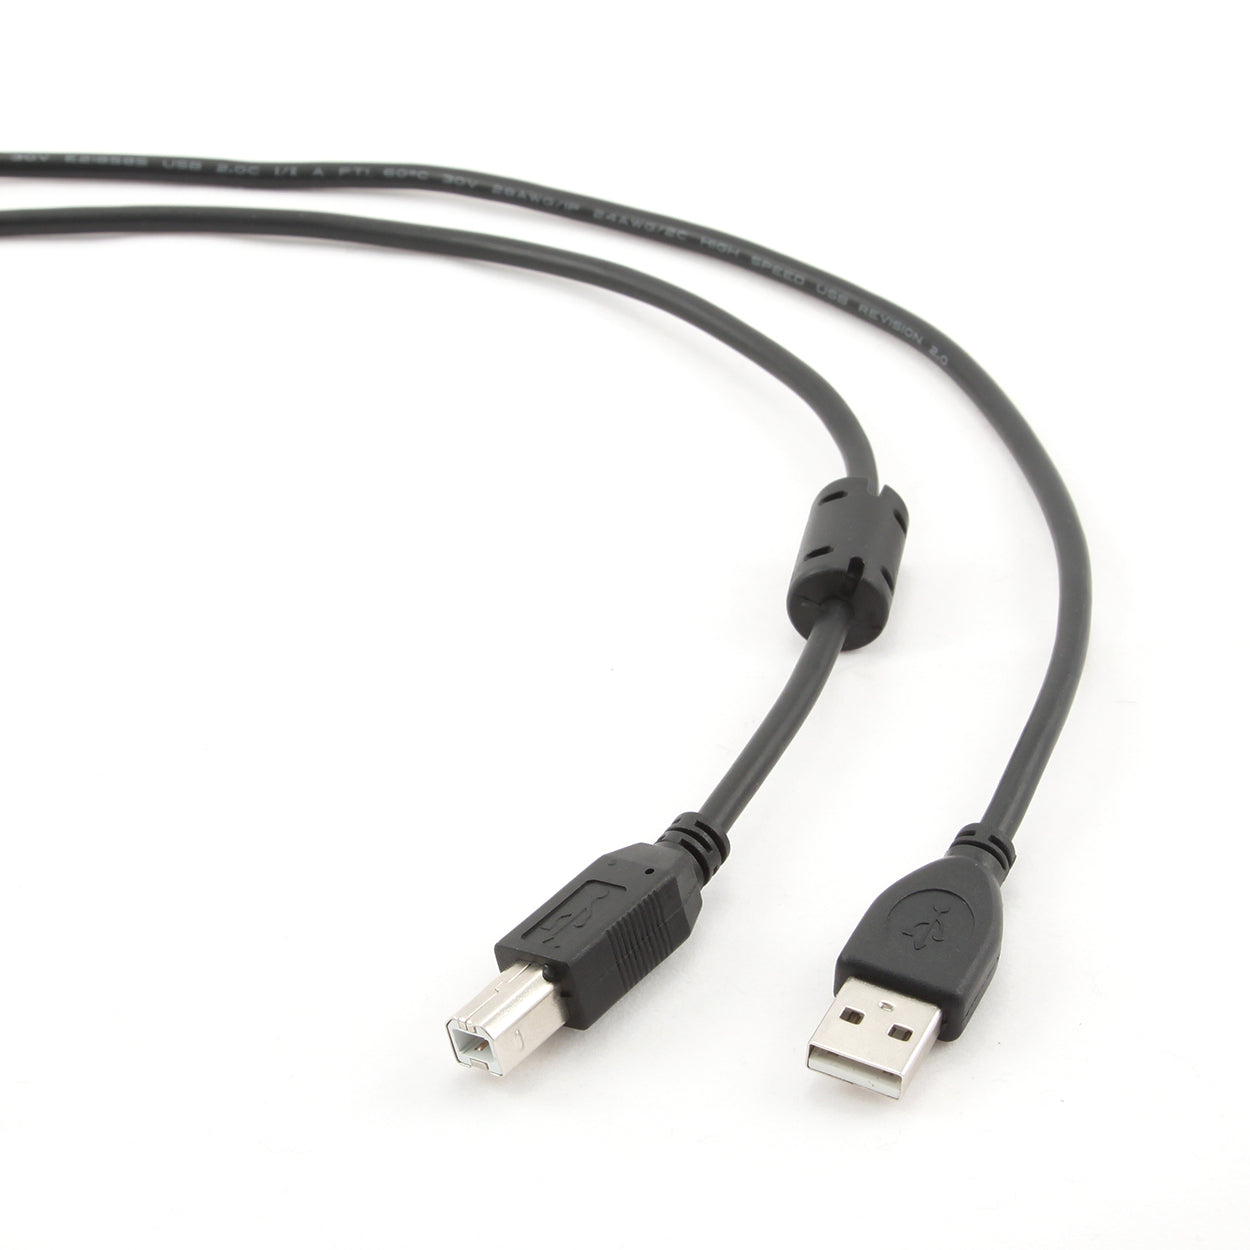 Cablexpert - Câble USB pour imprimante - 4.5m